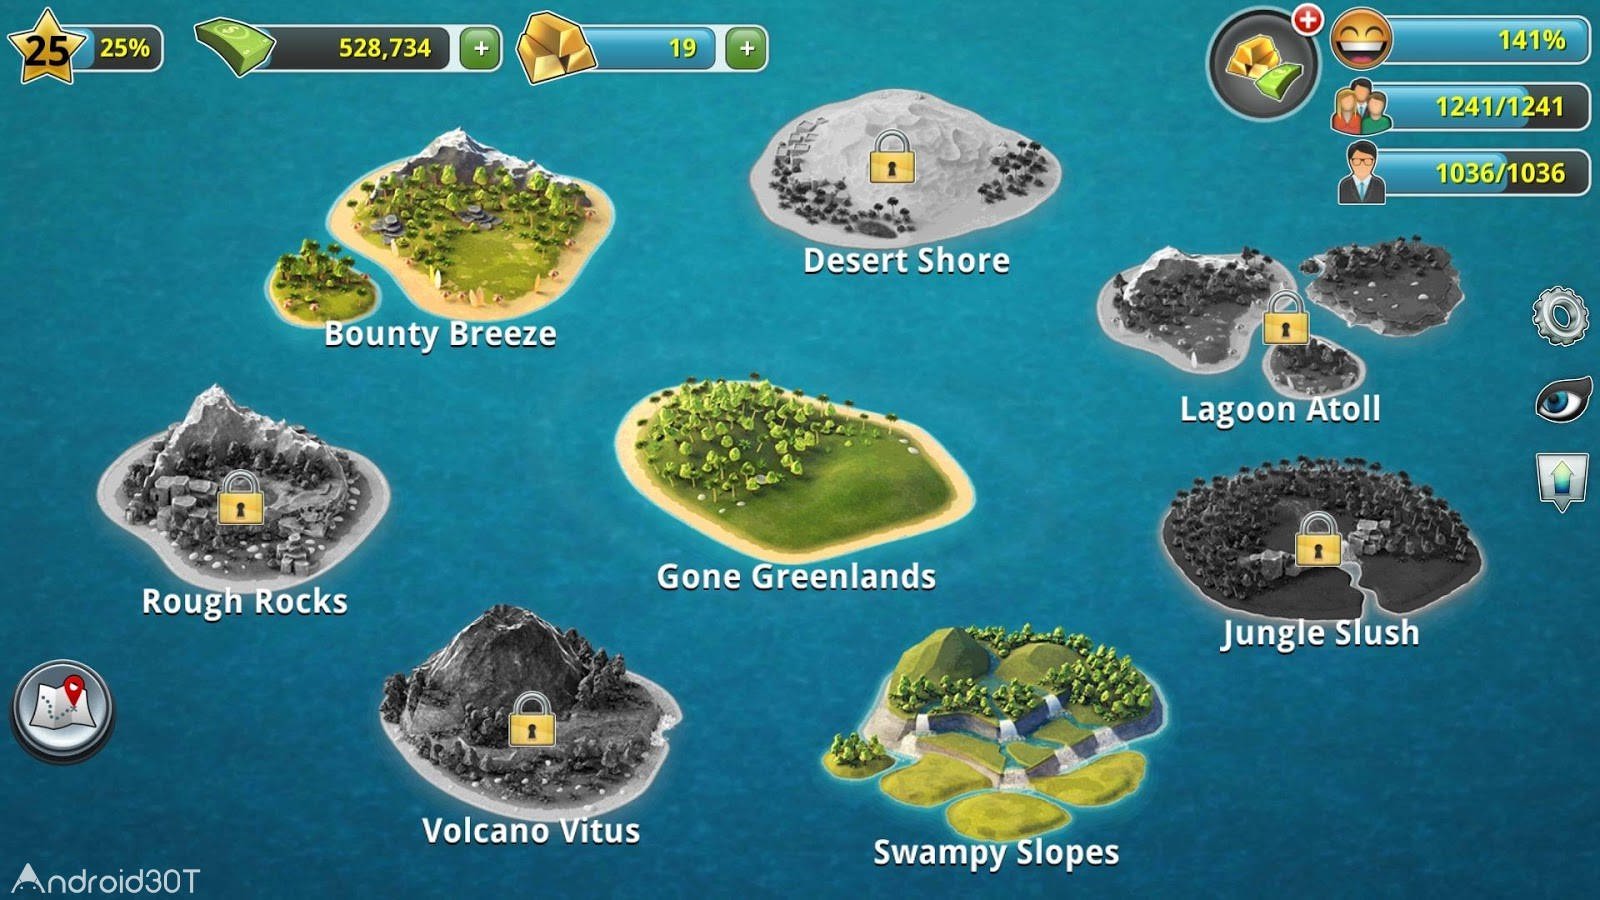 دانلود City Island 3 – Building Sim 3.4.5 – سیتی ایسلند 3 اندروید